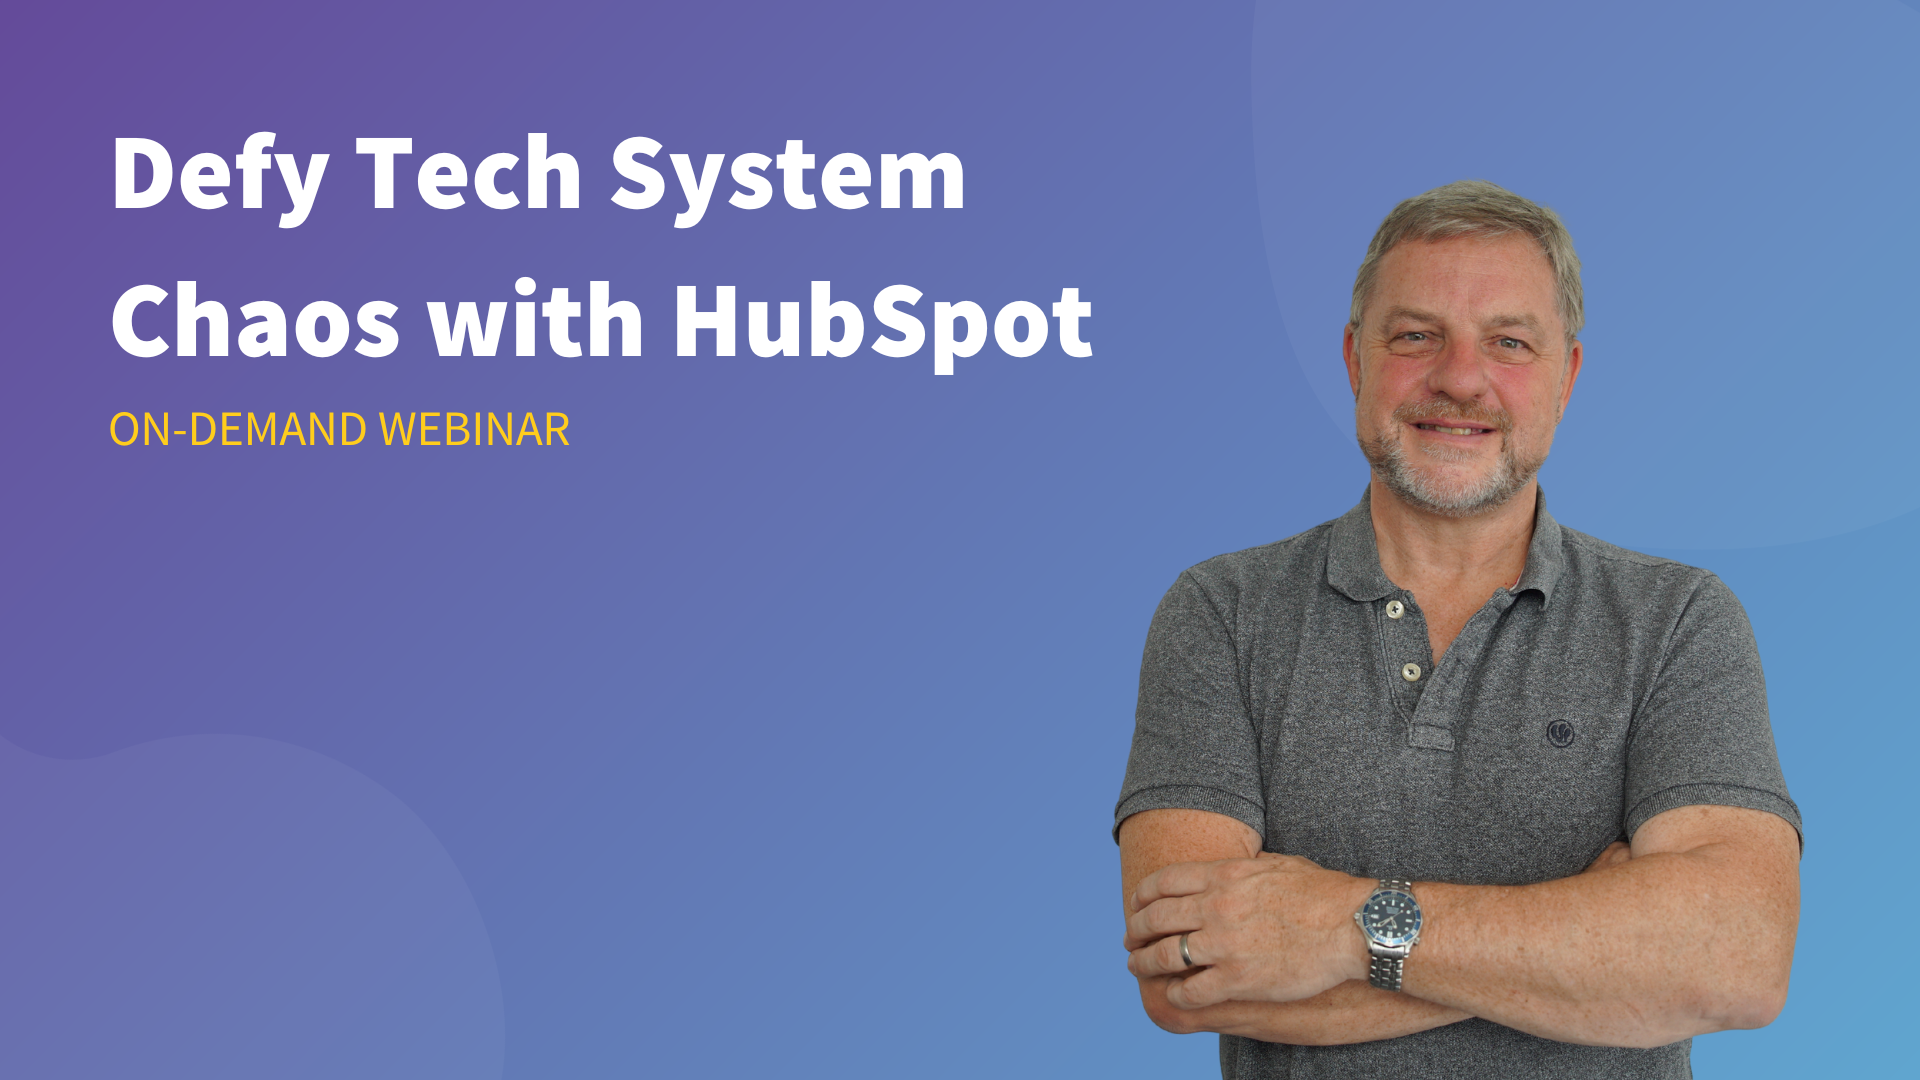 Defy Tech System Chaos With HubSpot Webinar